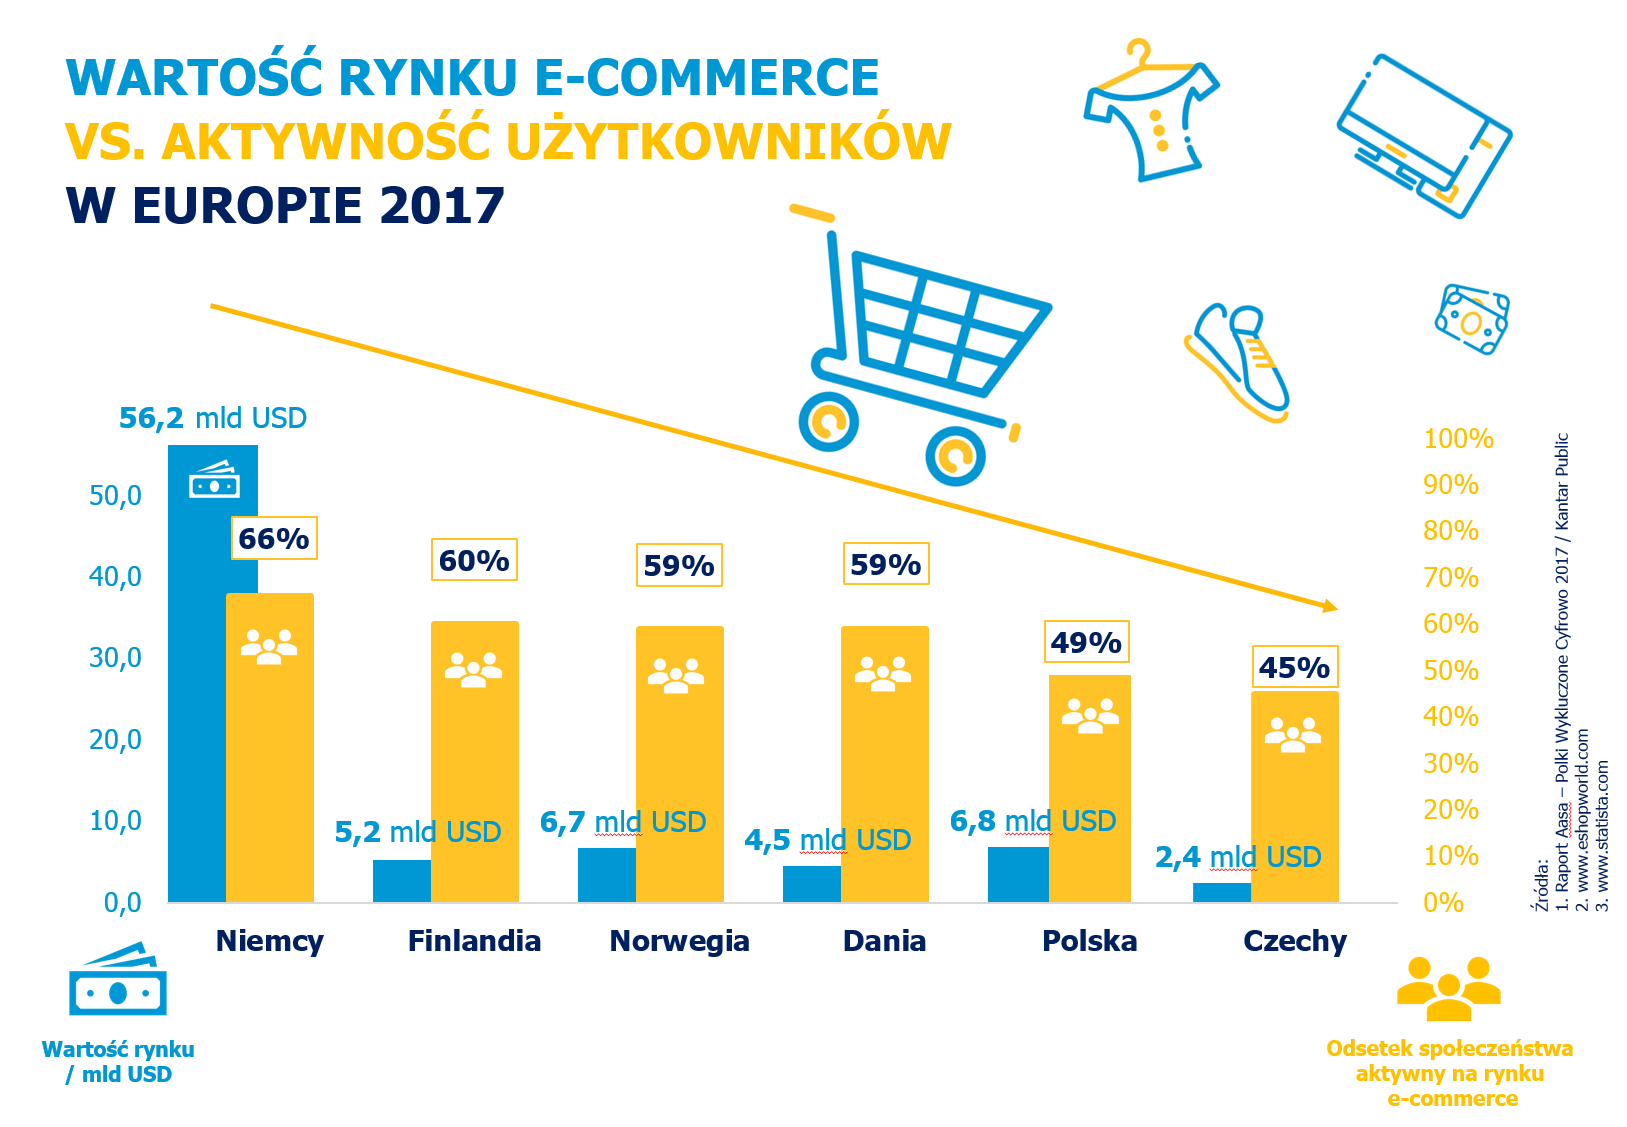 Wartość rynku e-commerce vs aktywność w e-commerce w Europie.